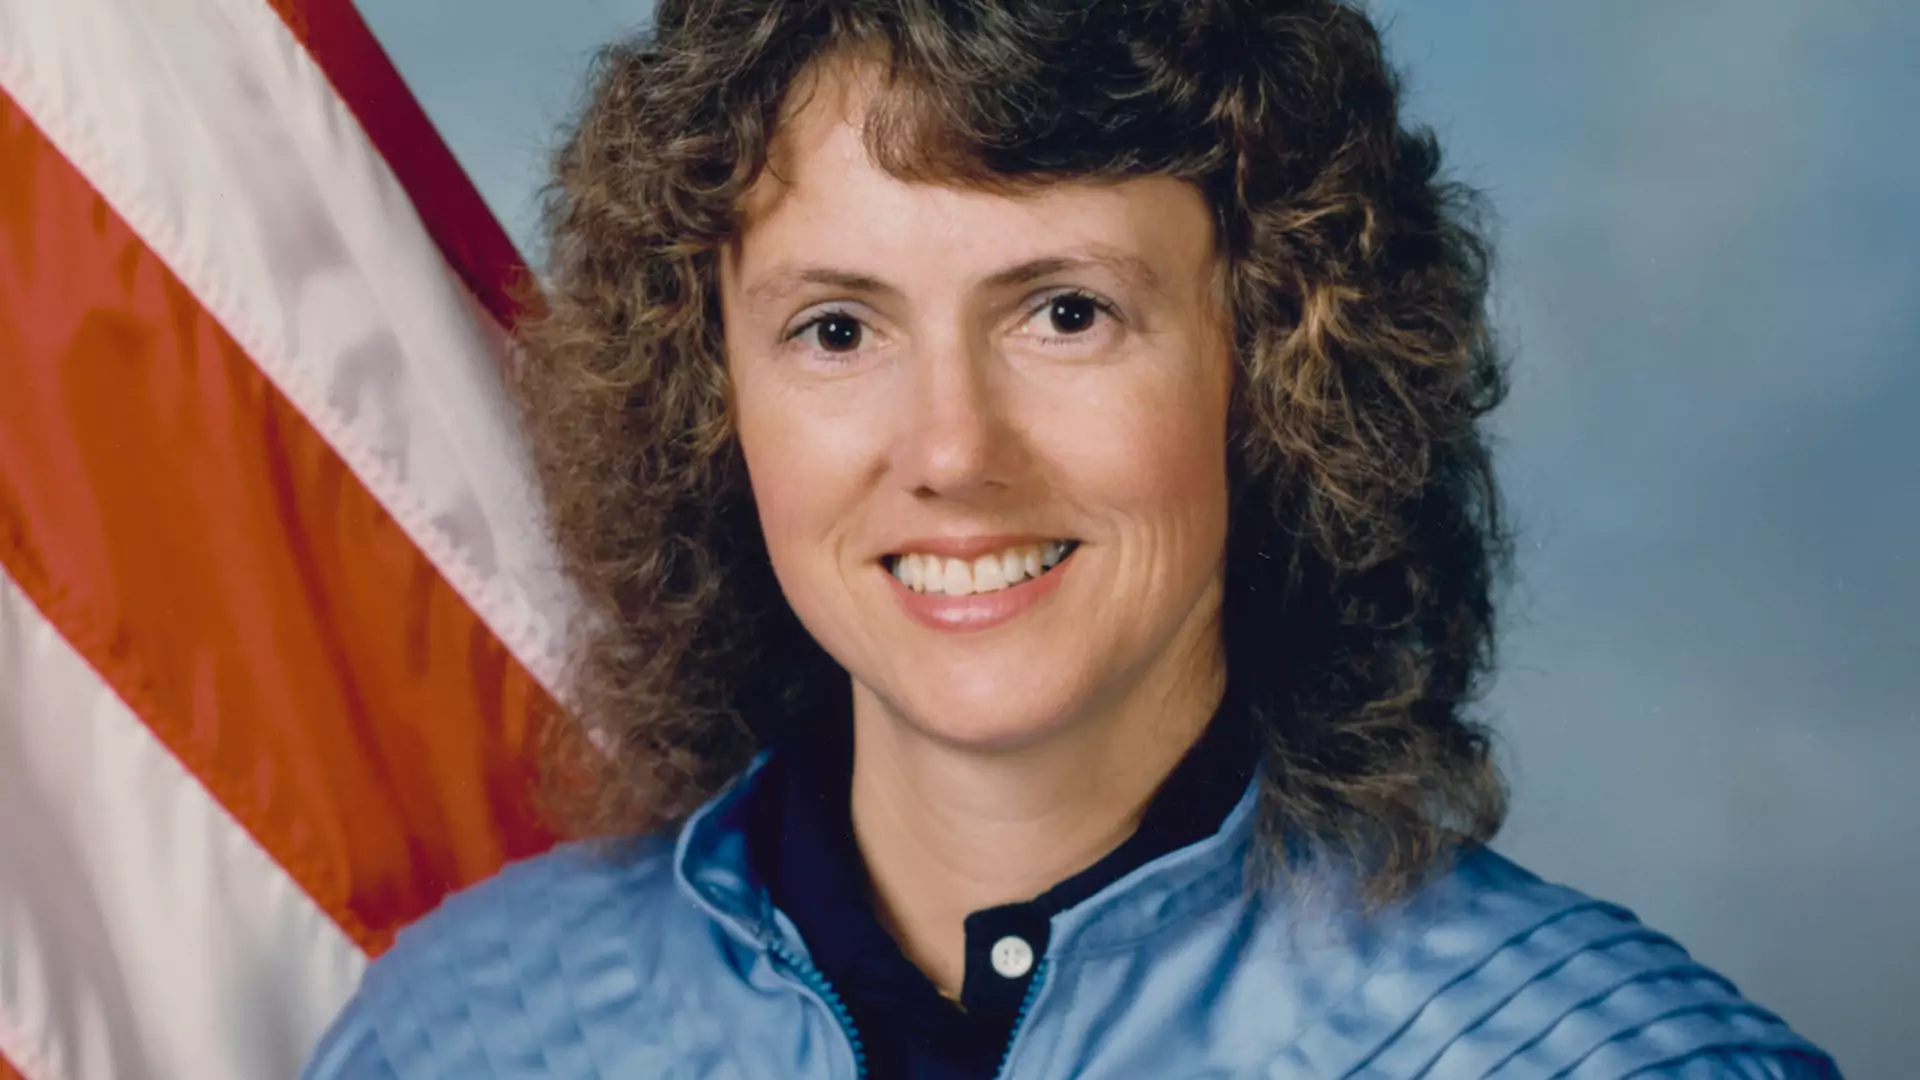 Miała być pierwszą nauczycielką w kosmosie. Zginęła tragiczną śmiercią. Historia Christy McAuliffe